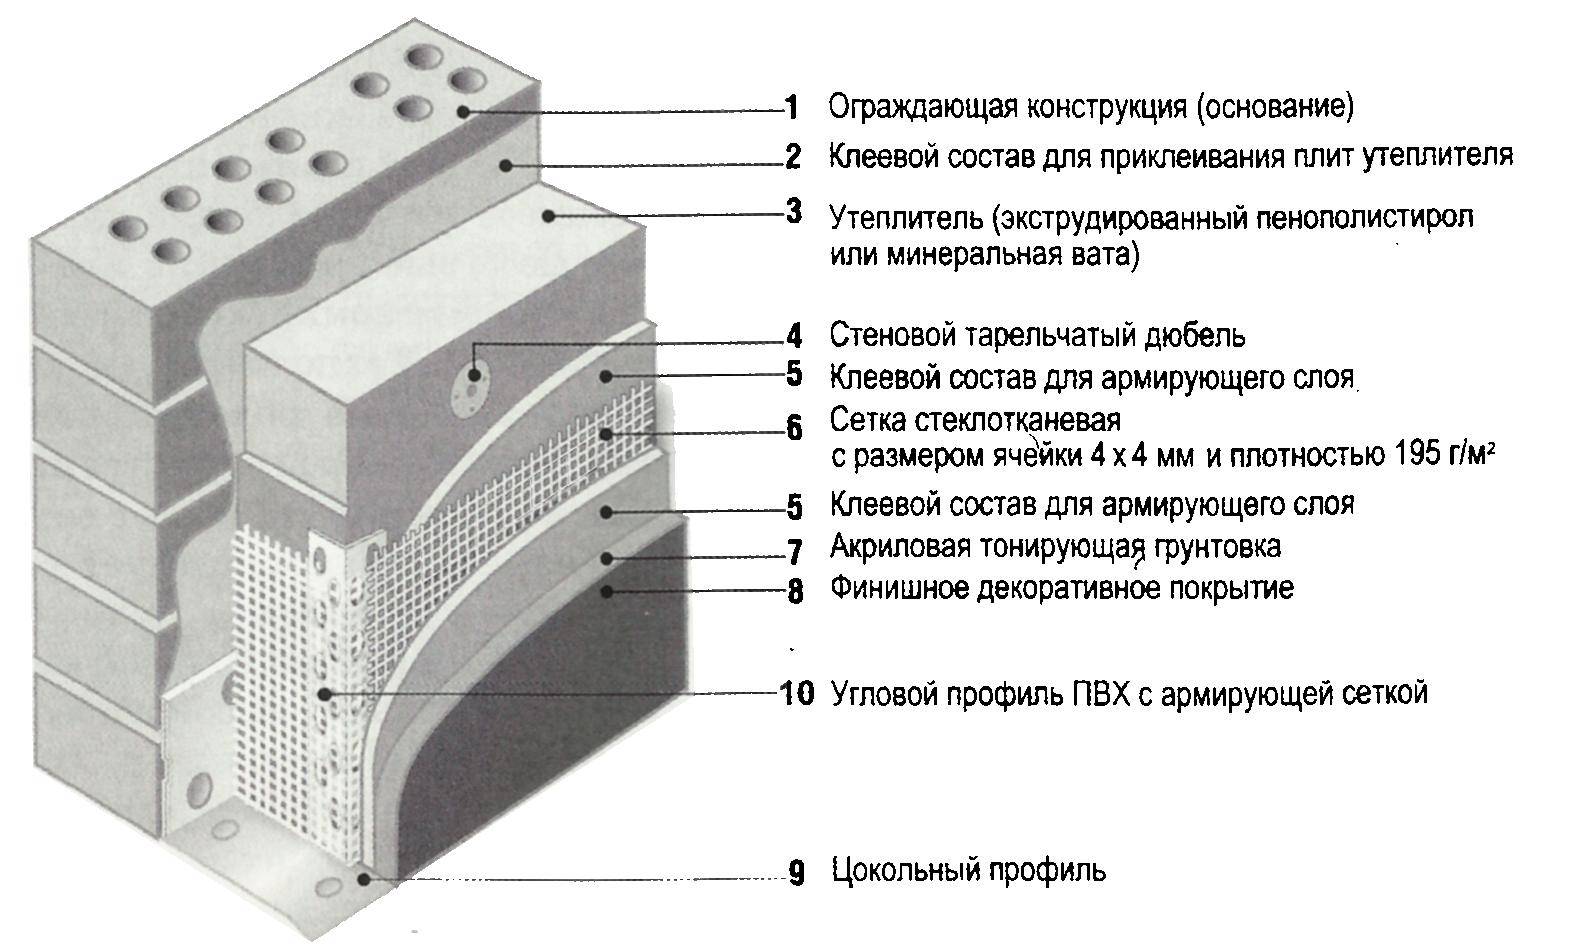 Штукатурка фасада дома - инструкция по отделке от мастера